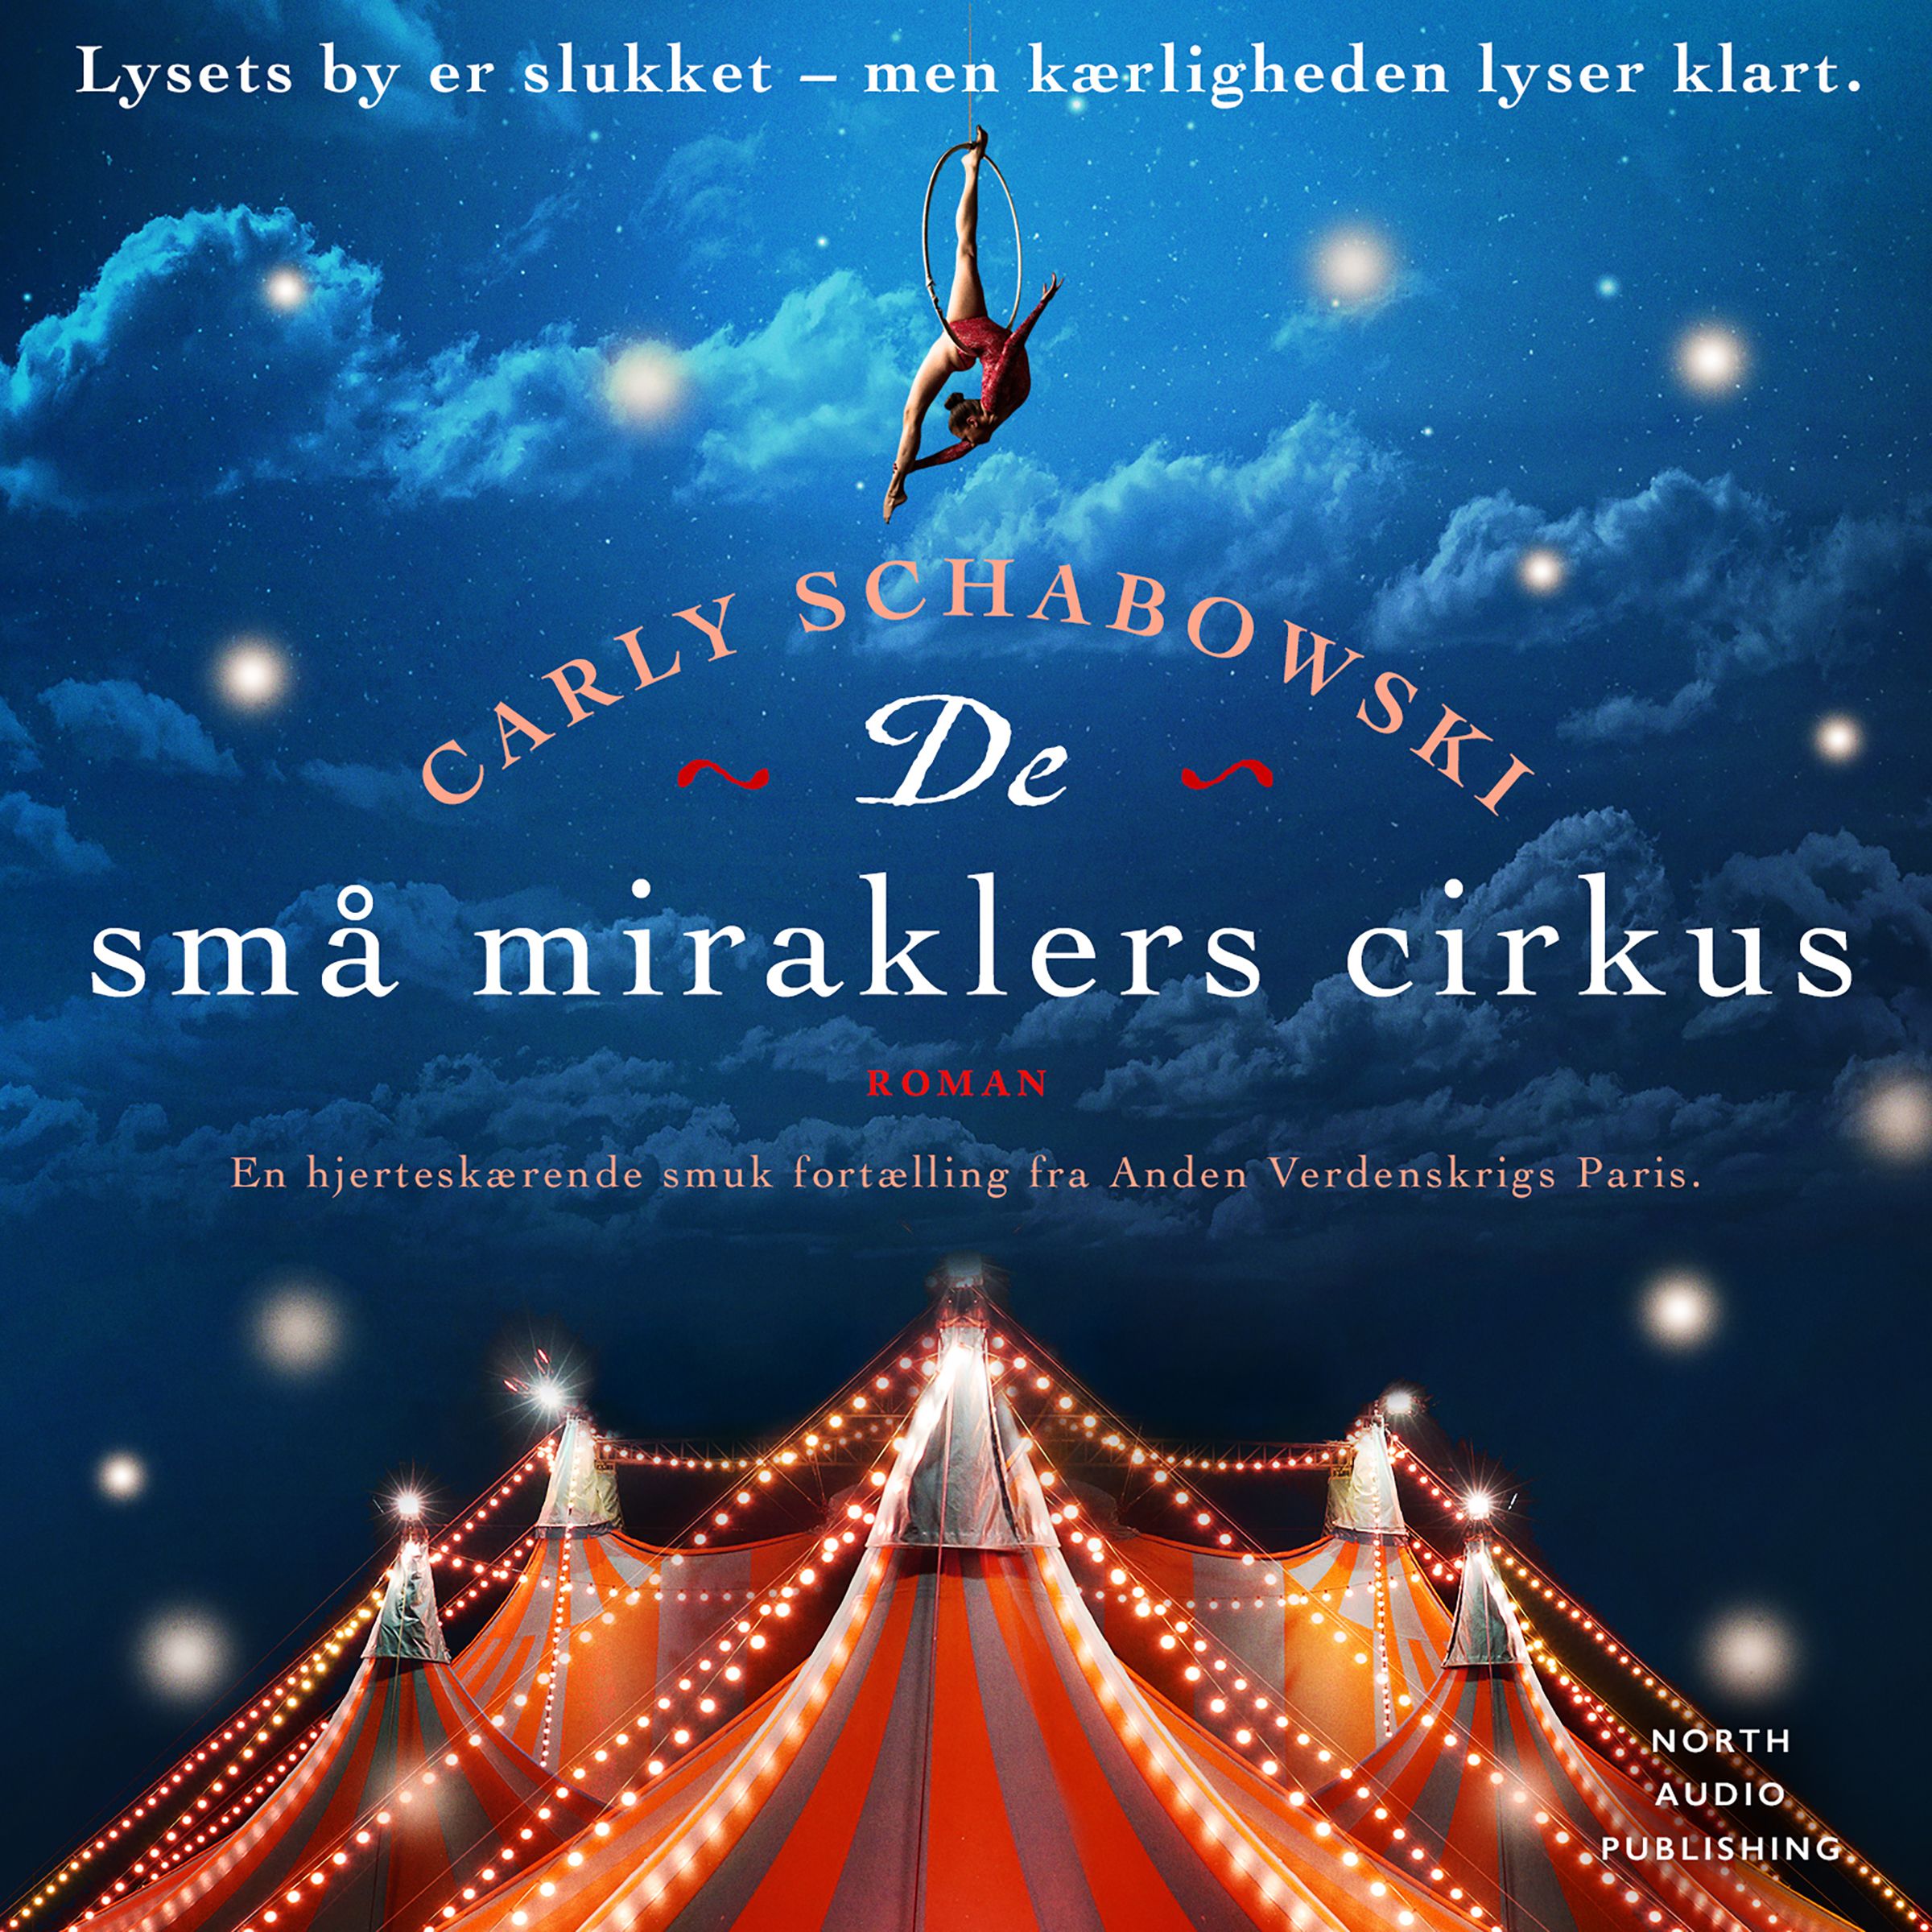 De små miraklers cirkus, ljudbok av Carly Schabowski